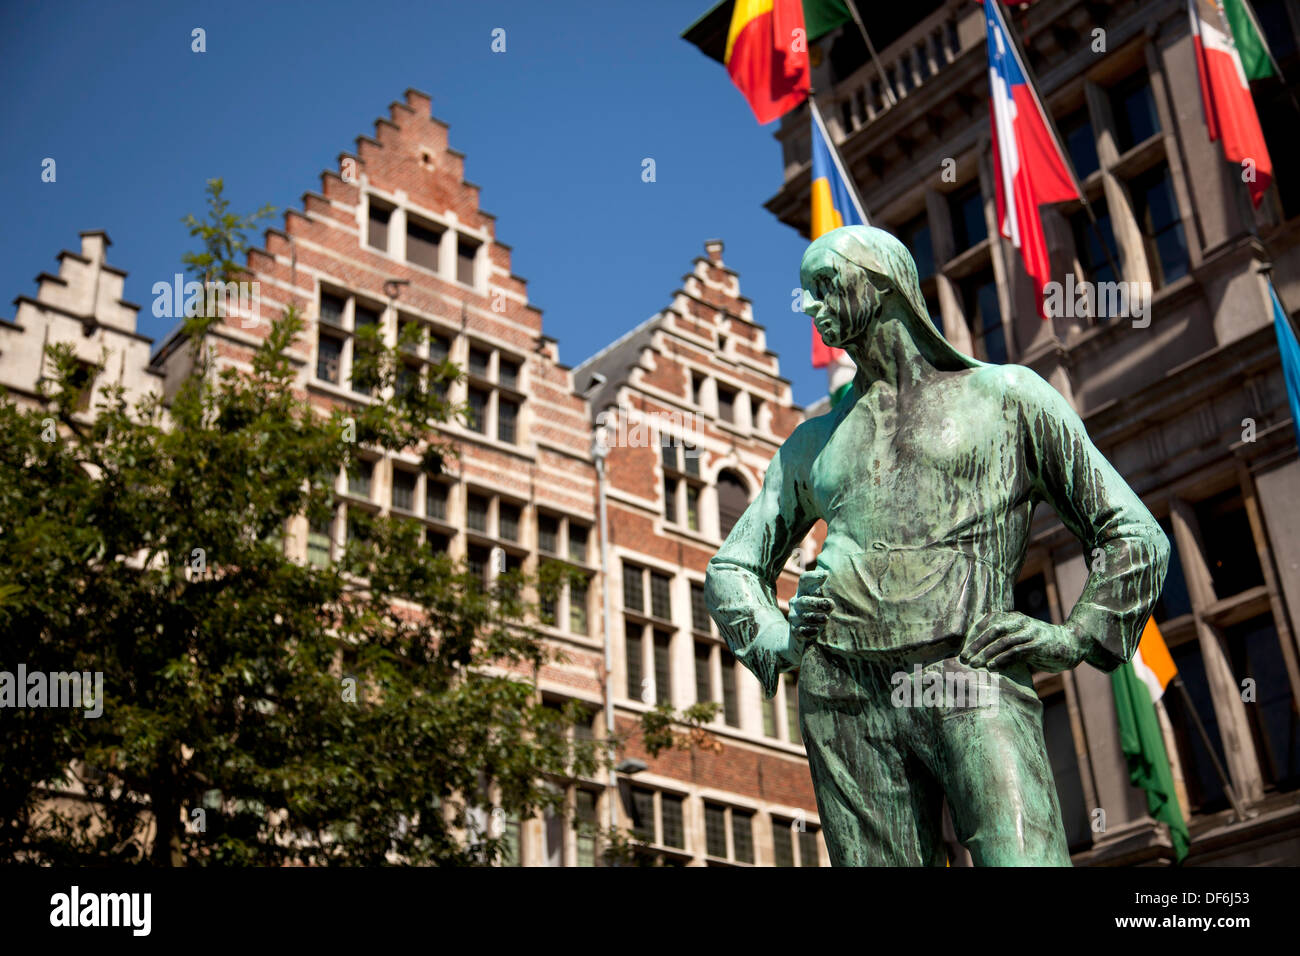 Buildrager gildhouses De statue et d'Anvers, Belgique, Europe Banque D'Images